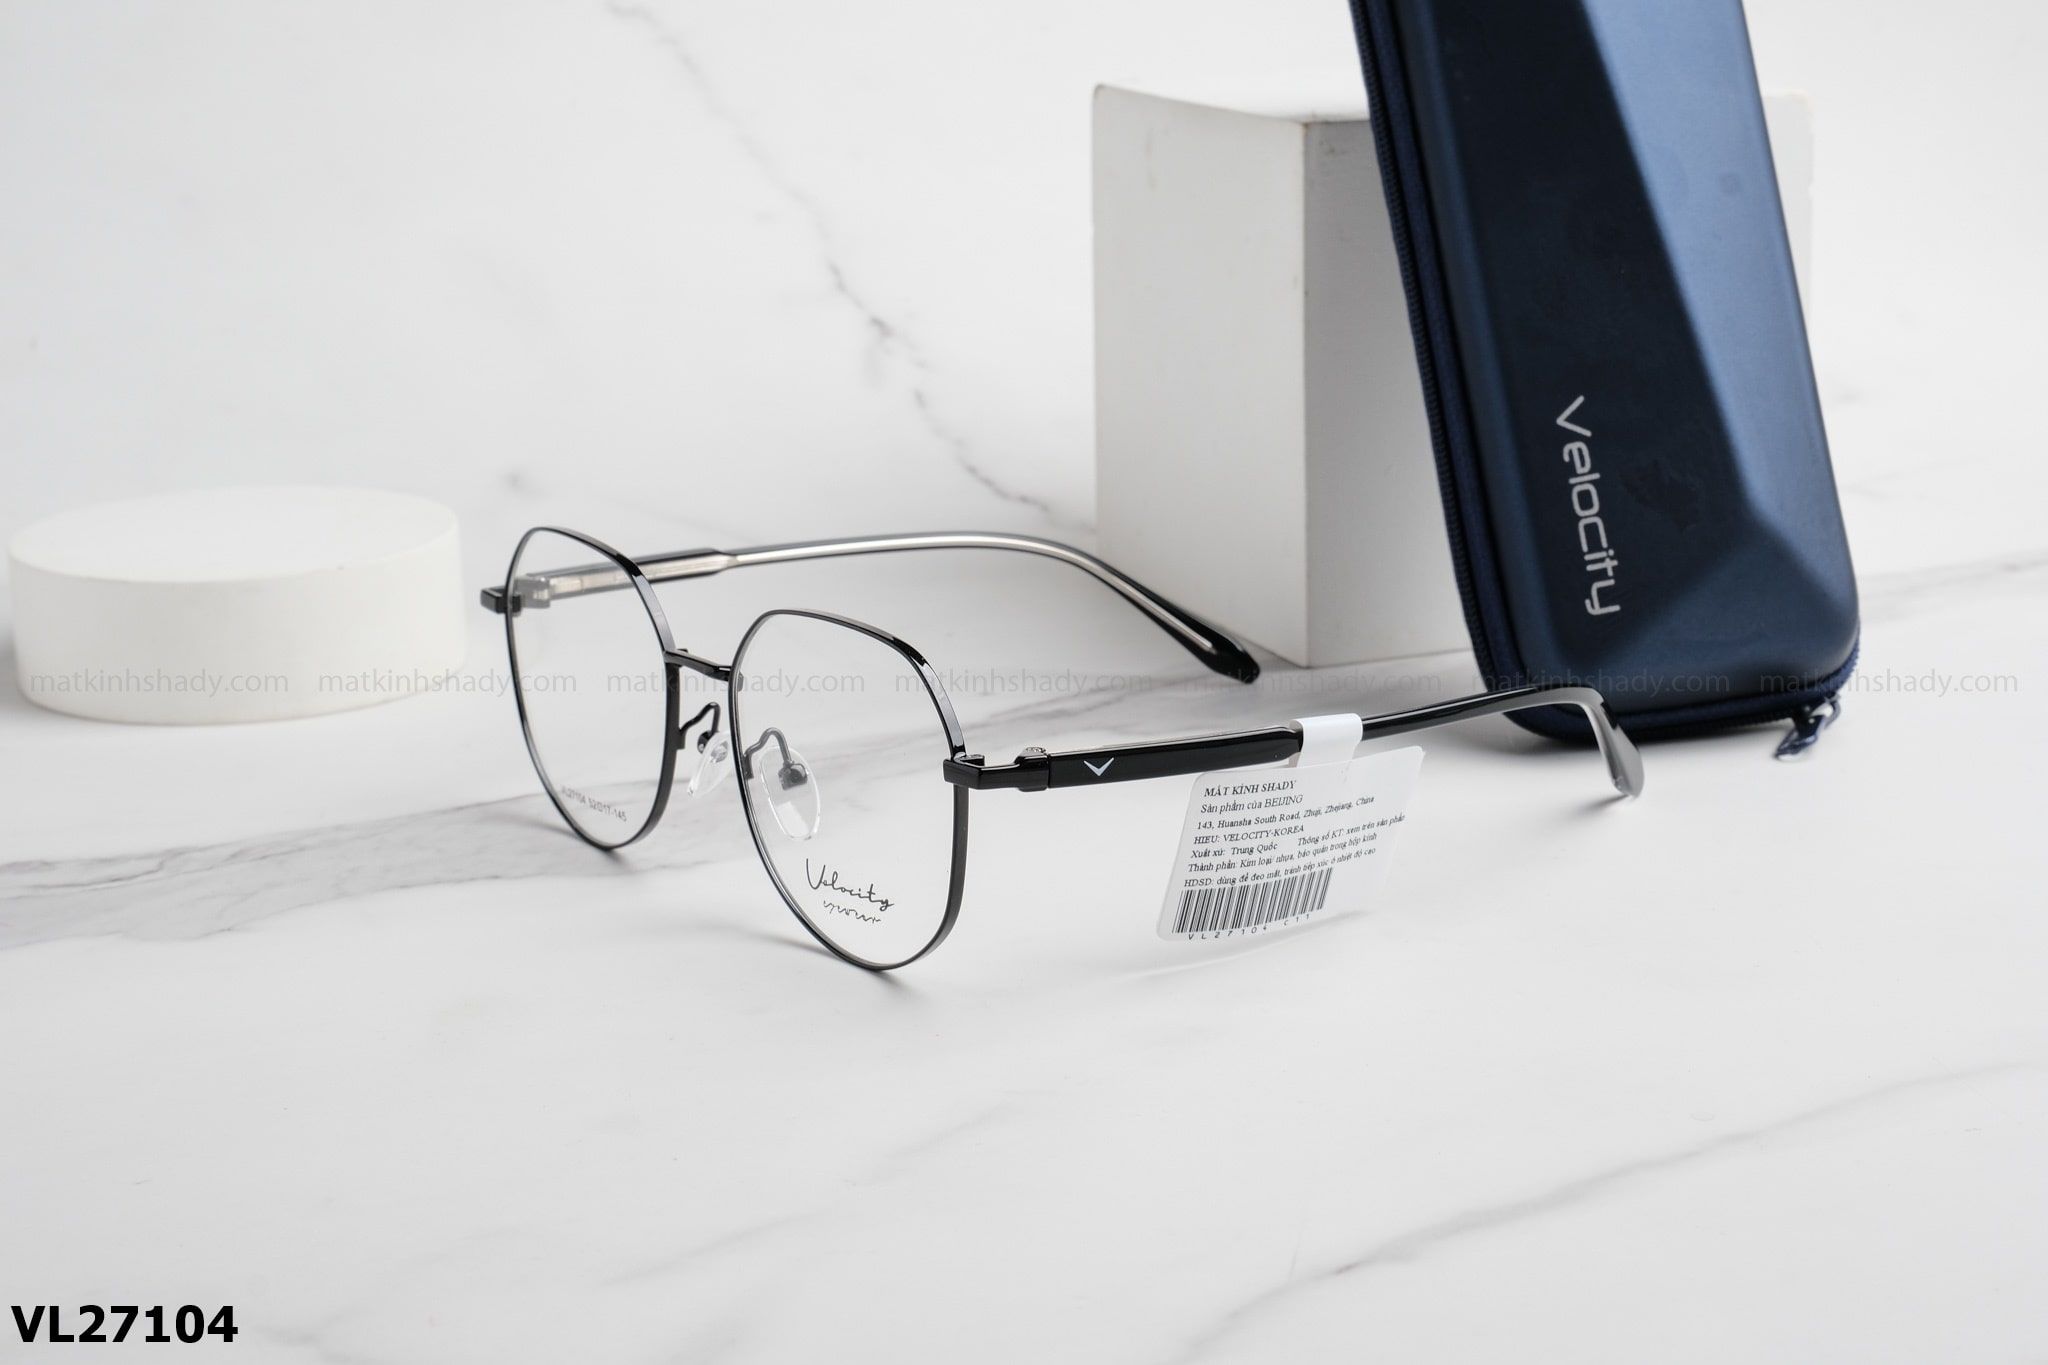  Velocity Eyewear - Glasses - VL27104 